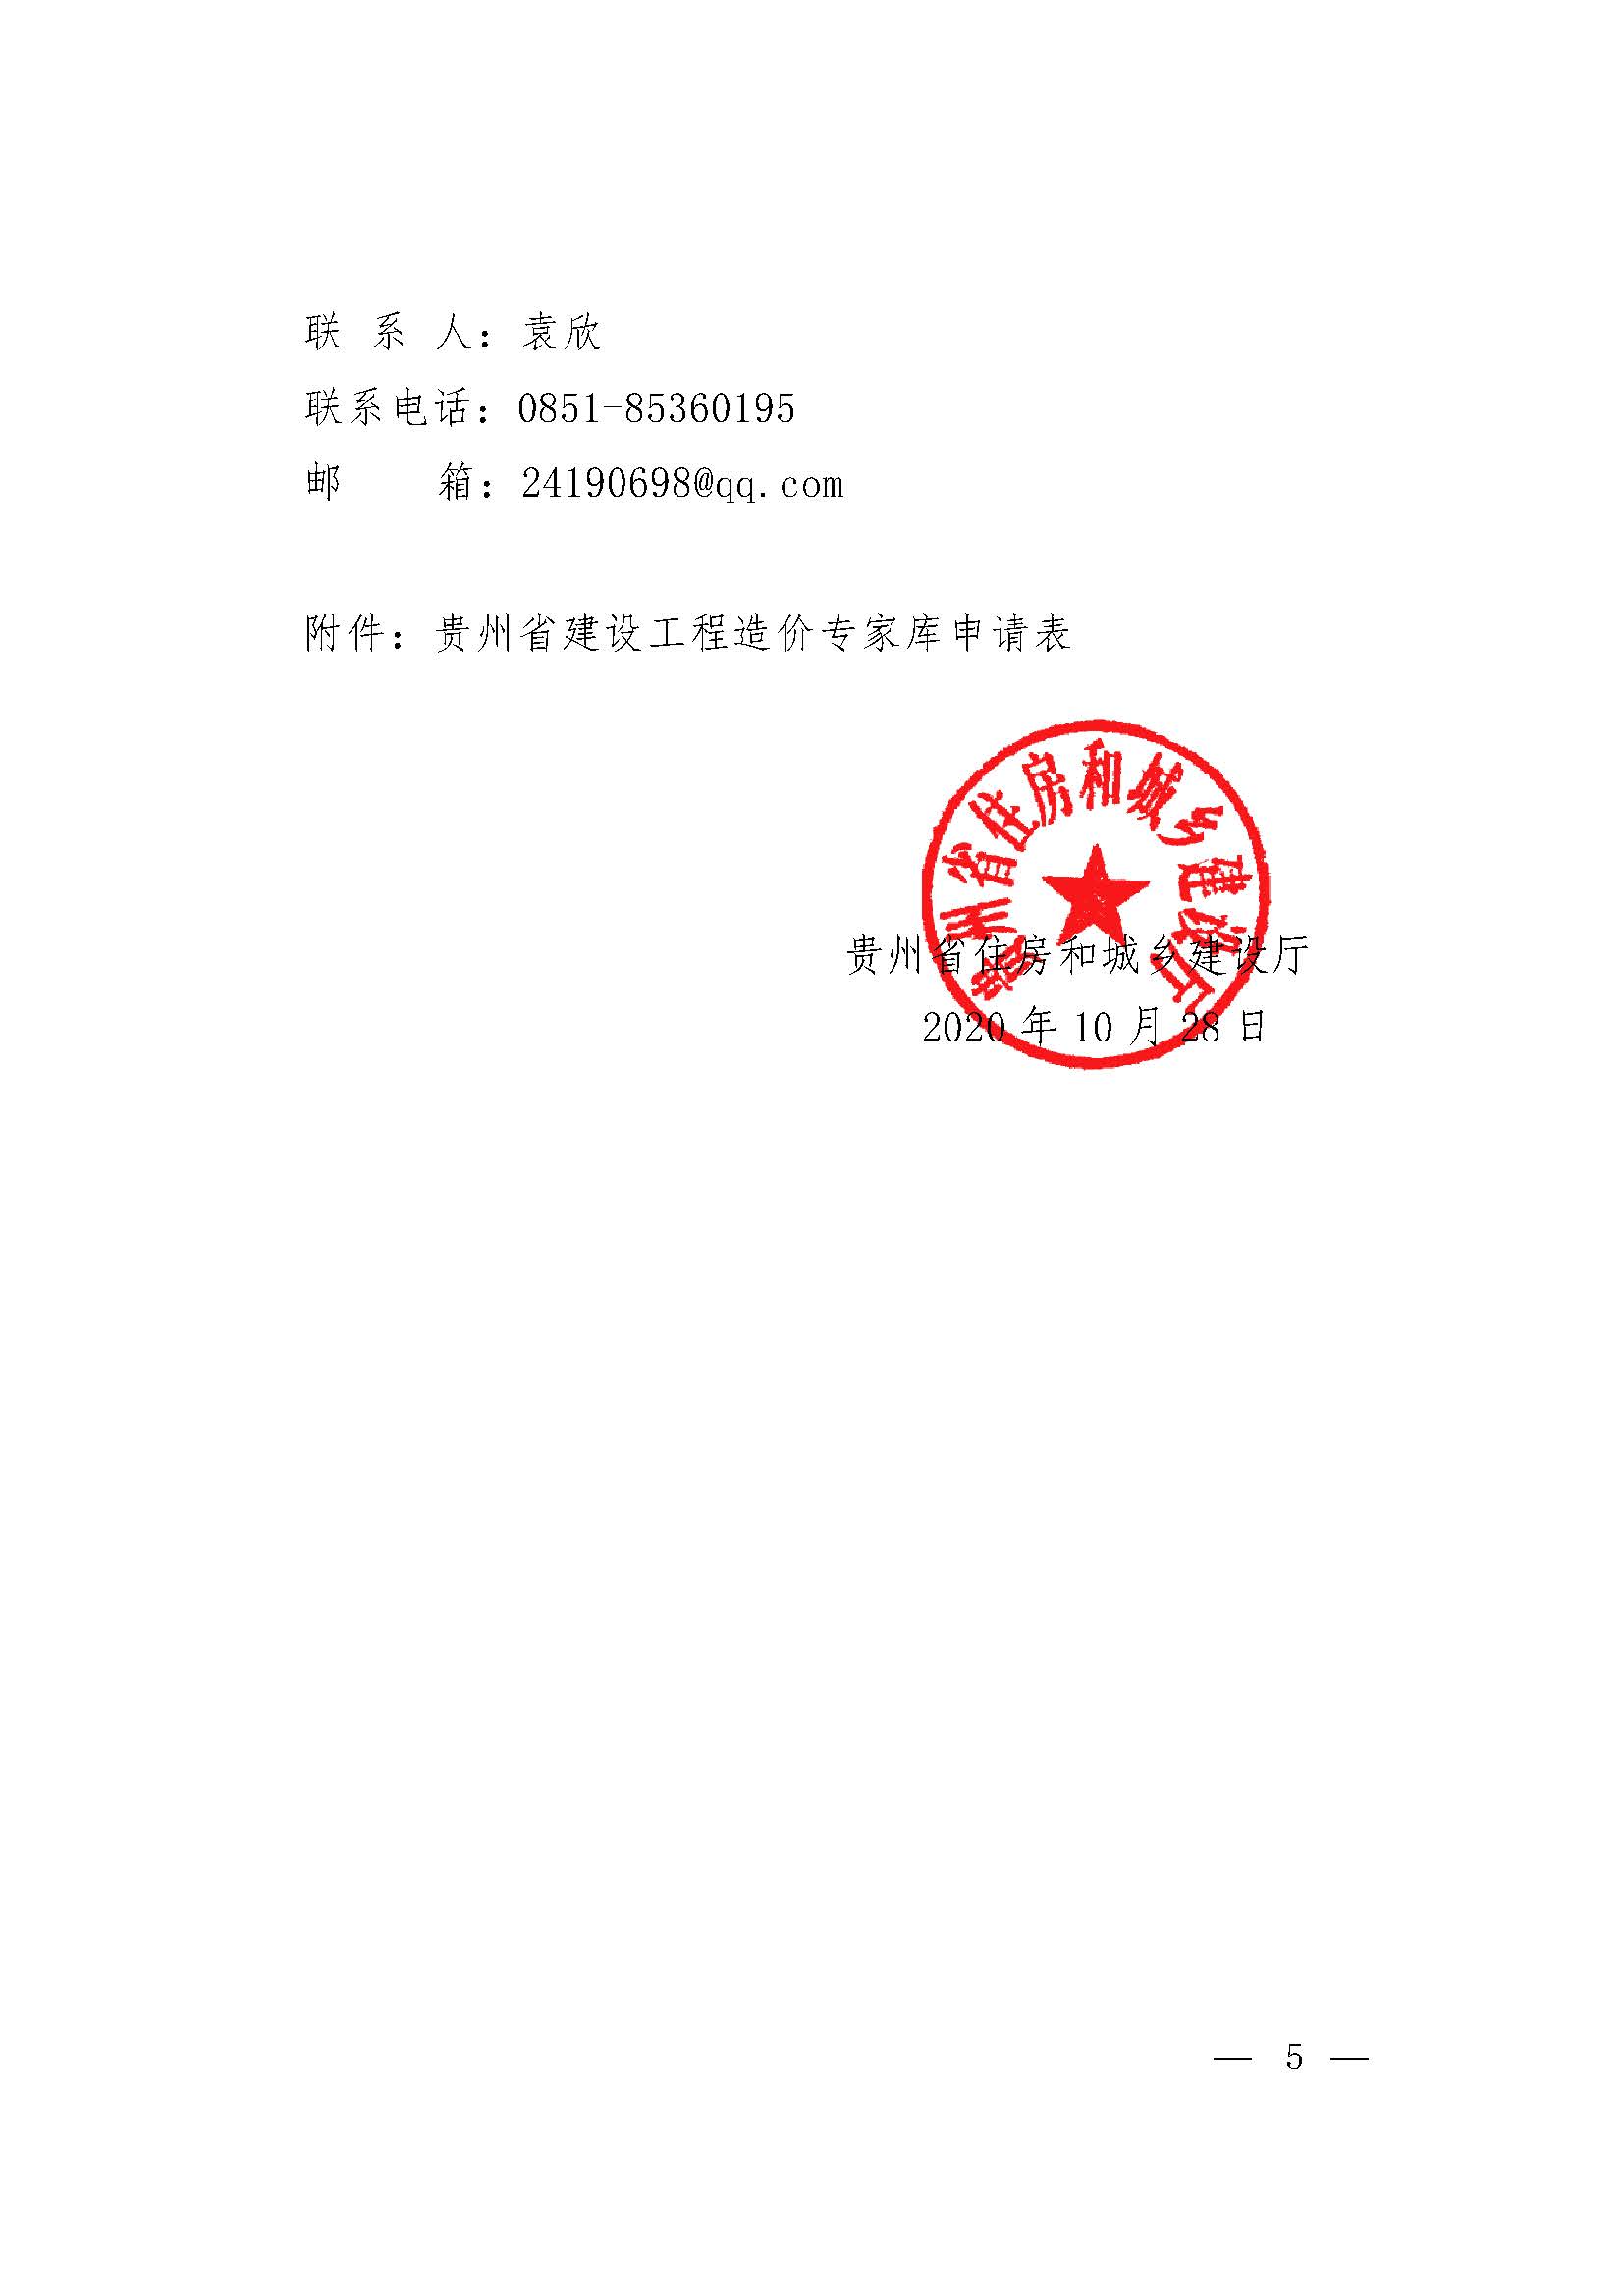 关于组建贵州省建设工程造价专家库的通知_页面_5.jpg